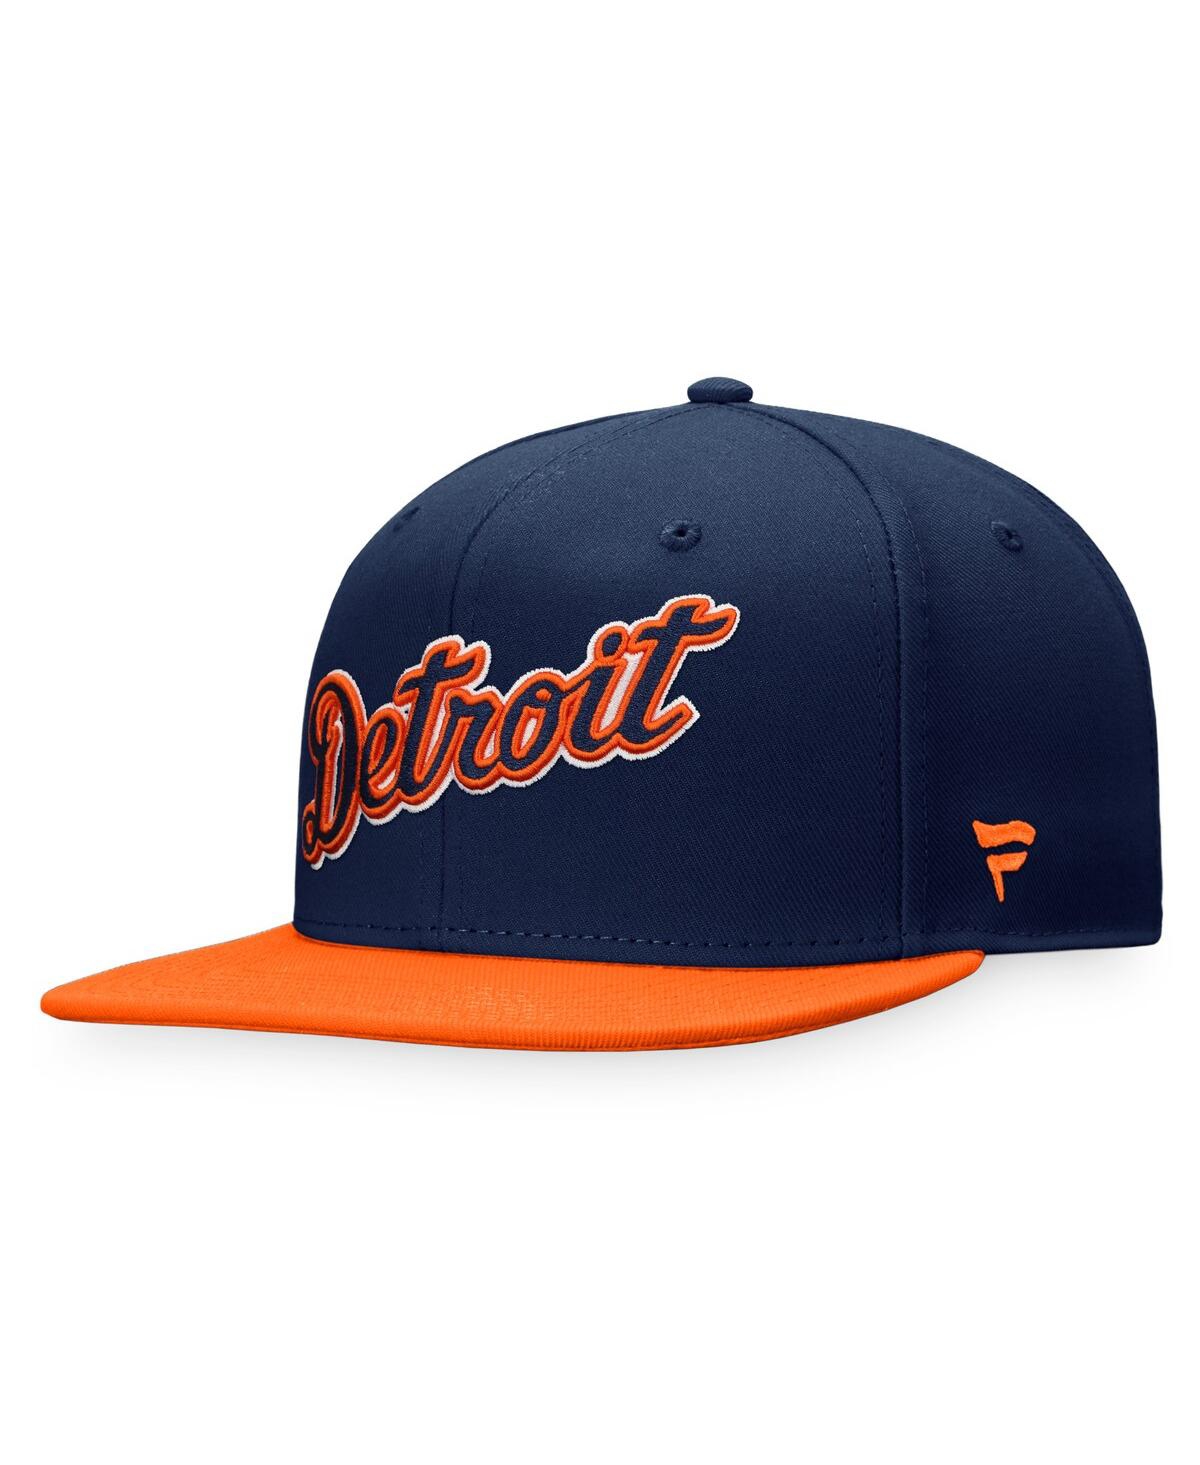 Men's Fanatics Branded Gray Detroit Tigers Cooperstown Core Adjustable Hat